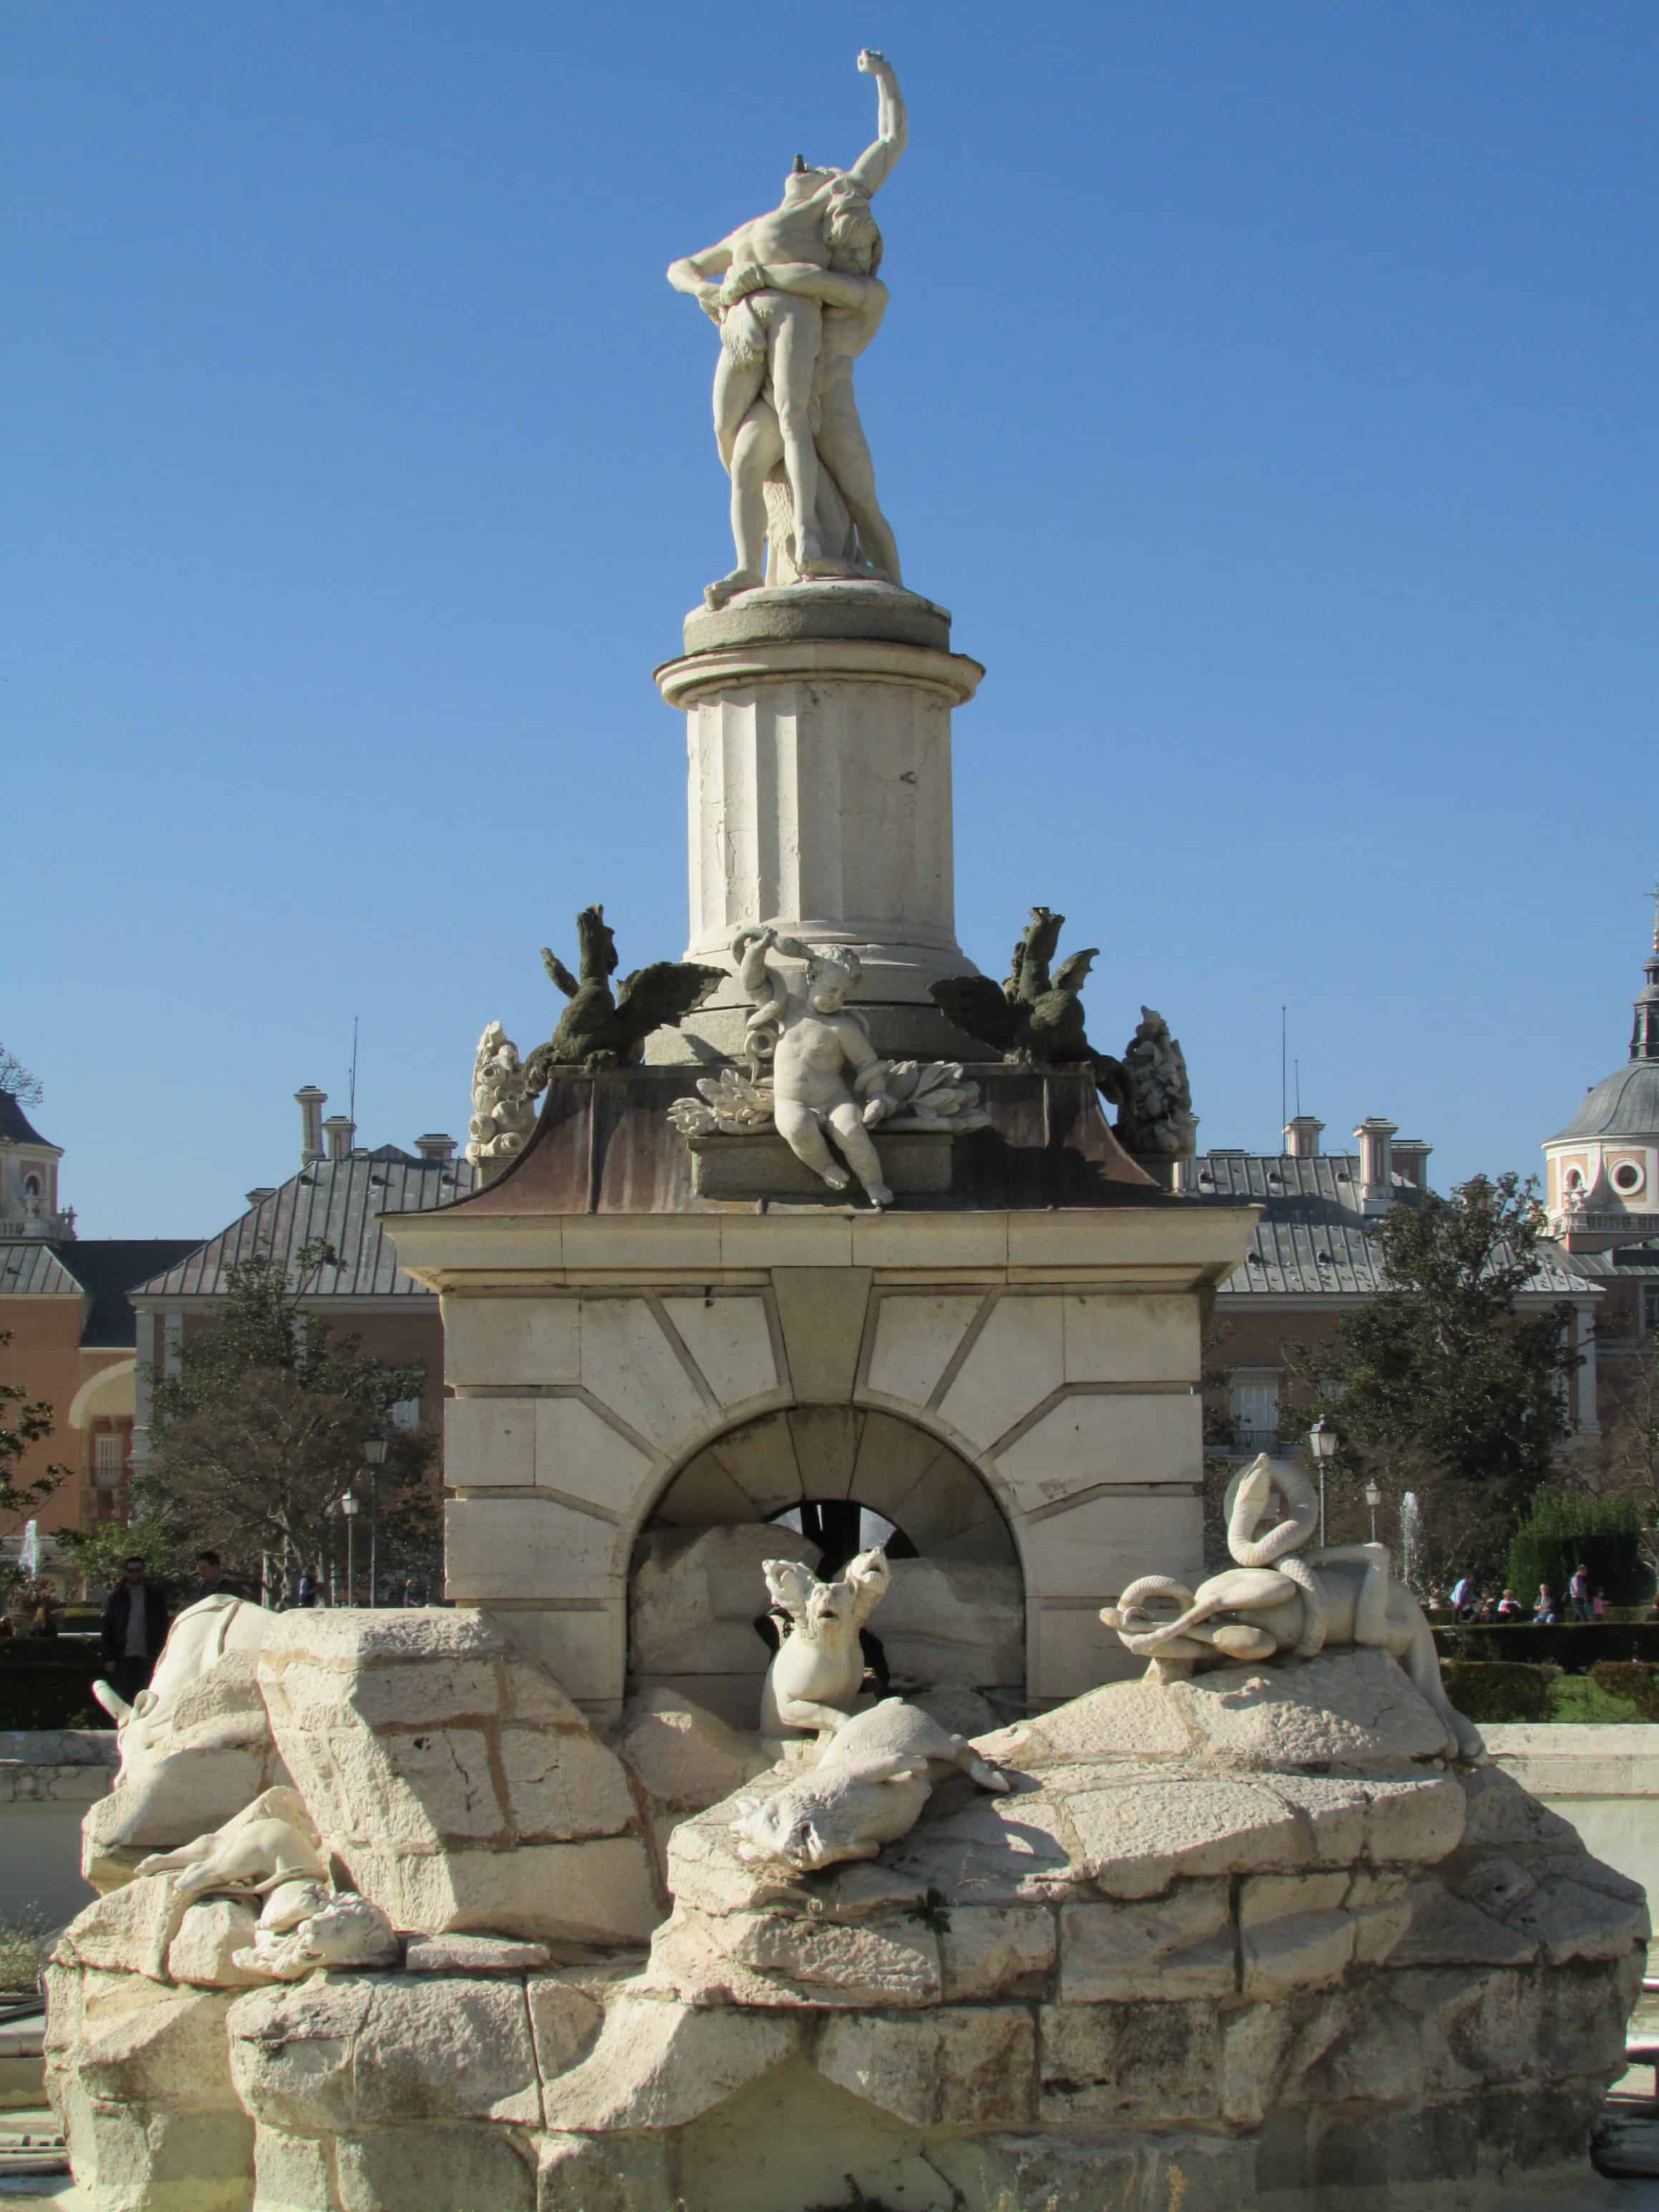 The Fountain of Hercules and Antaeus Parterre Garden